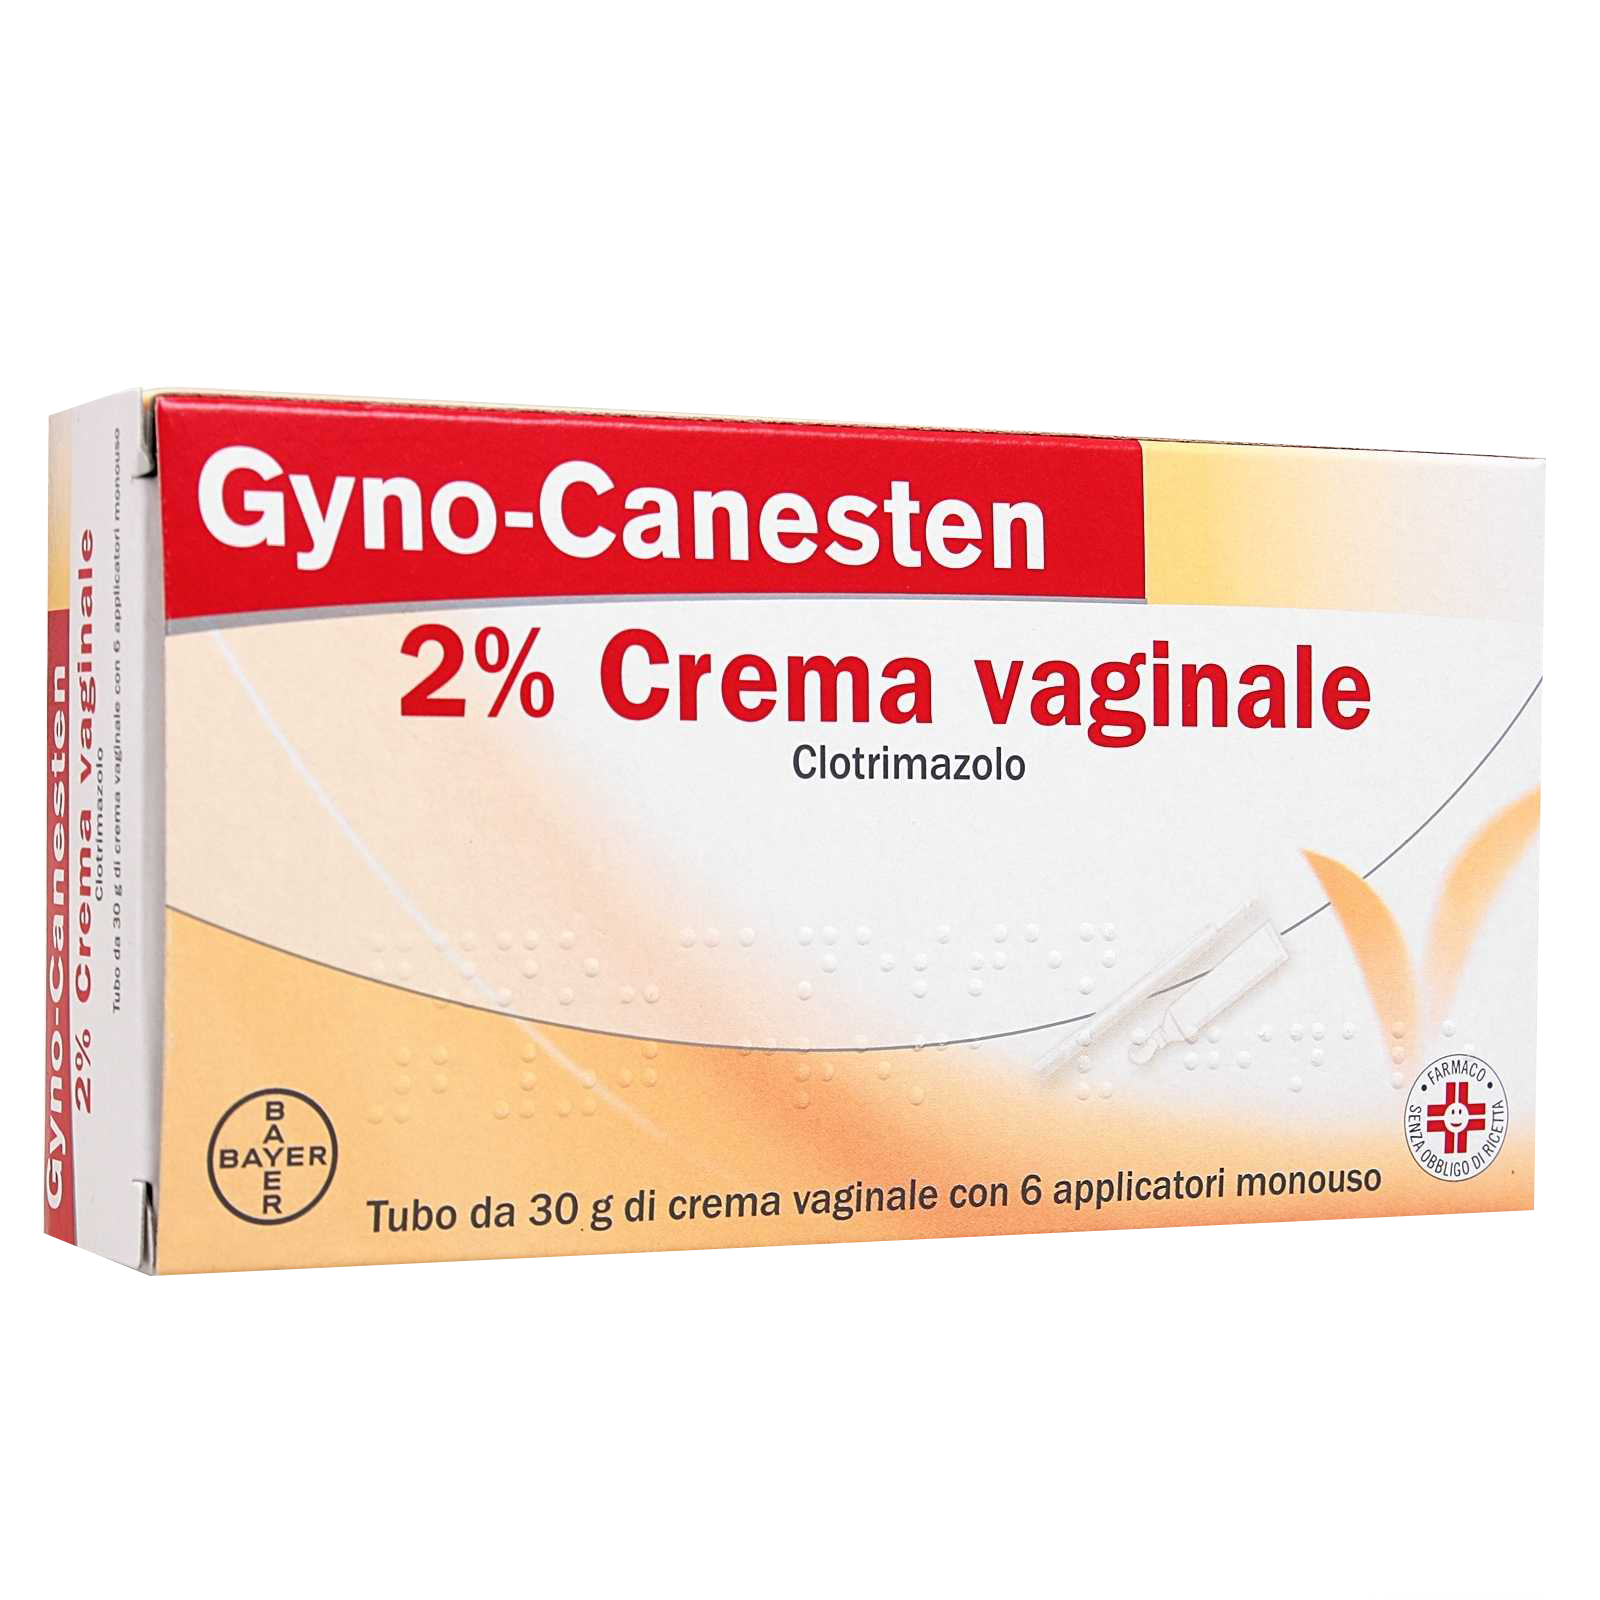 GYNO-CANESTEN CREMA VAGINALE 30G 2%